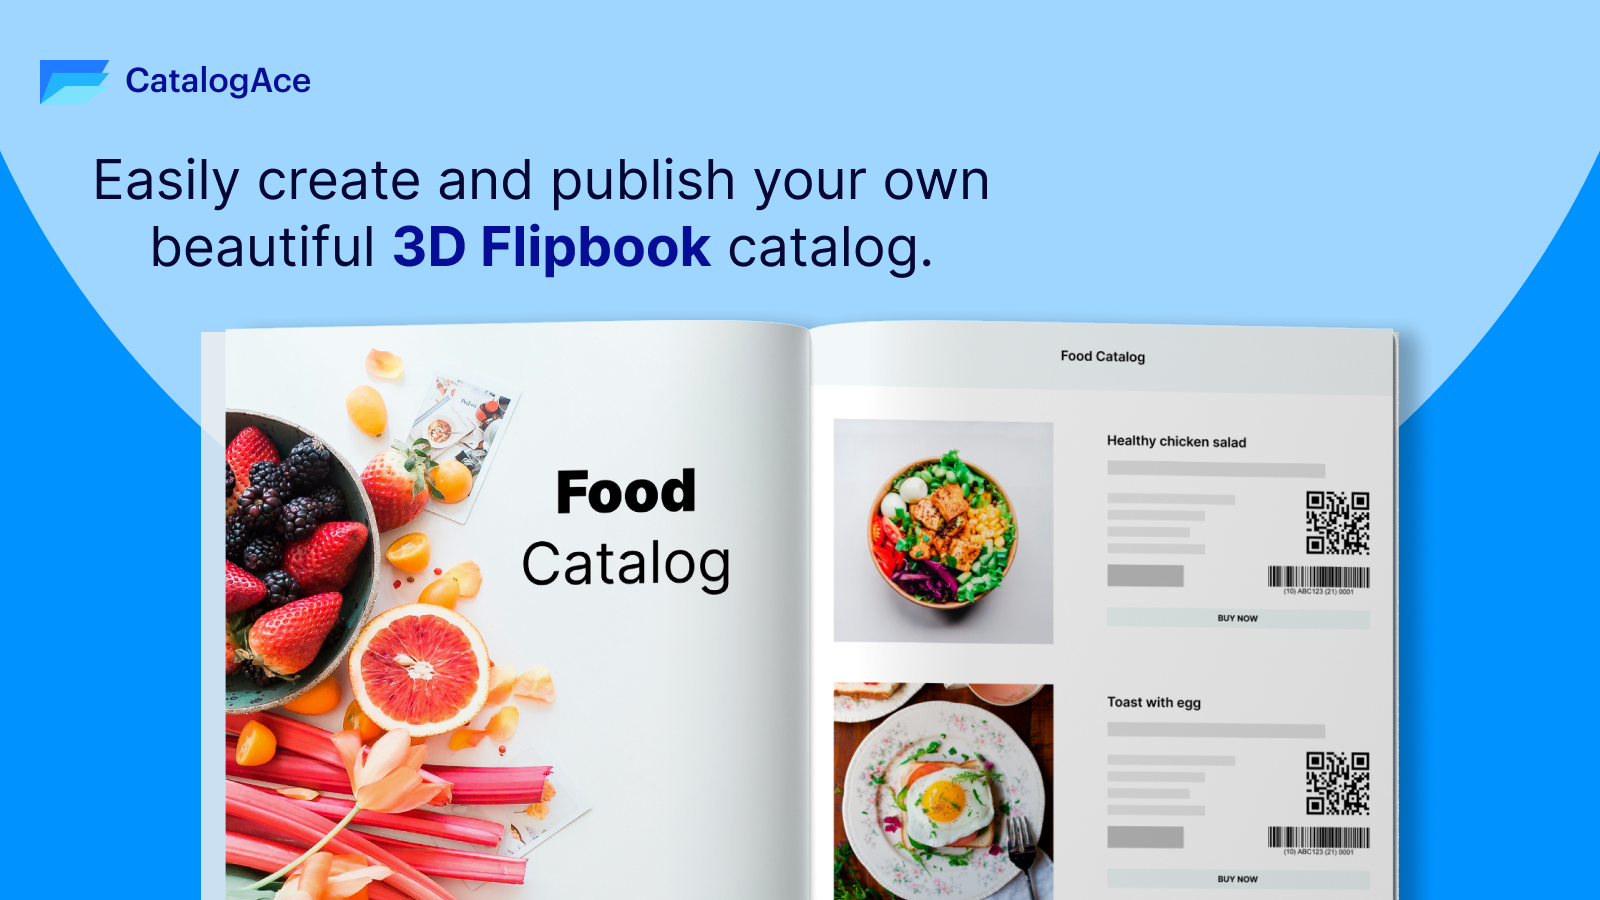 Crie e publique facilmente seu próprio belo Flipbook 3D